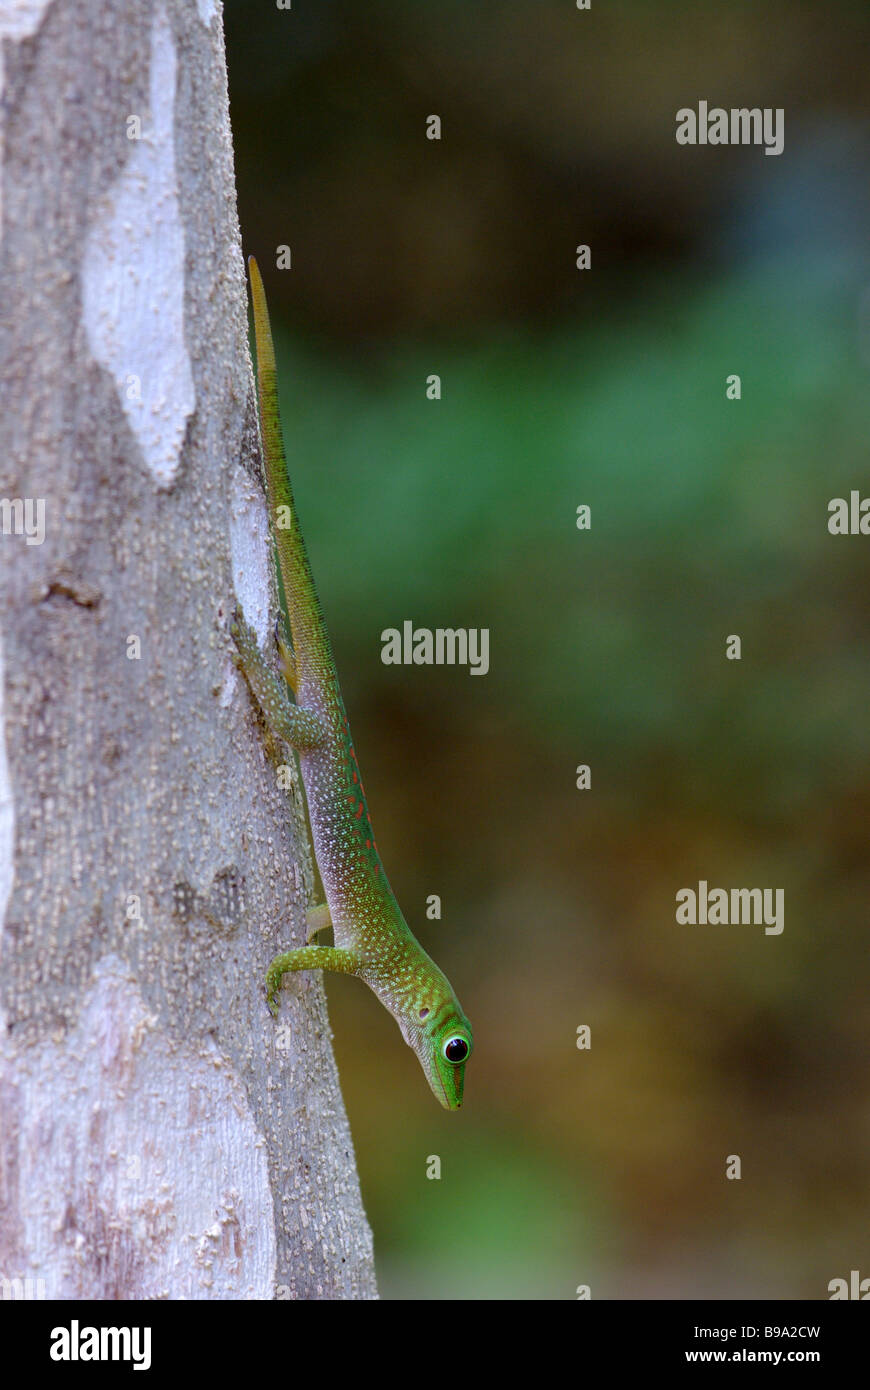 Young Madagascar Day Gecko (Phelsuma madagascariensis) on tree trunk in Anjajavy, Madagascar. Stock Photo